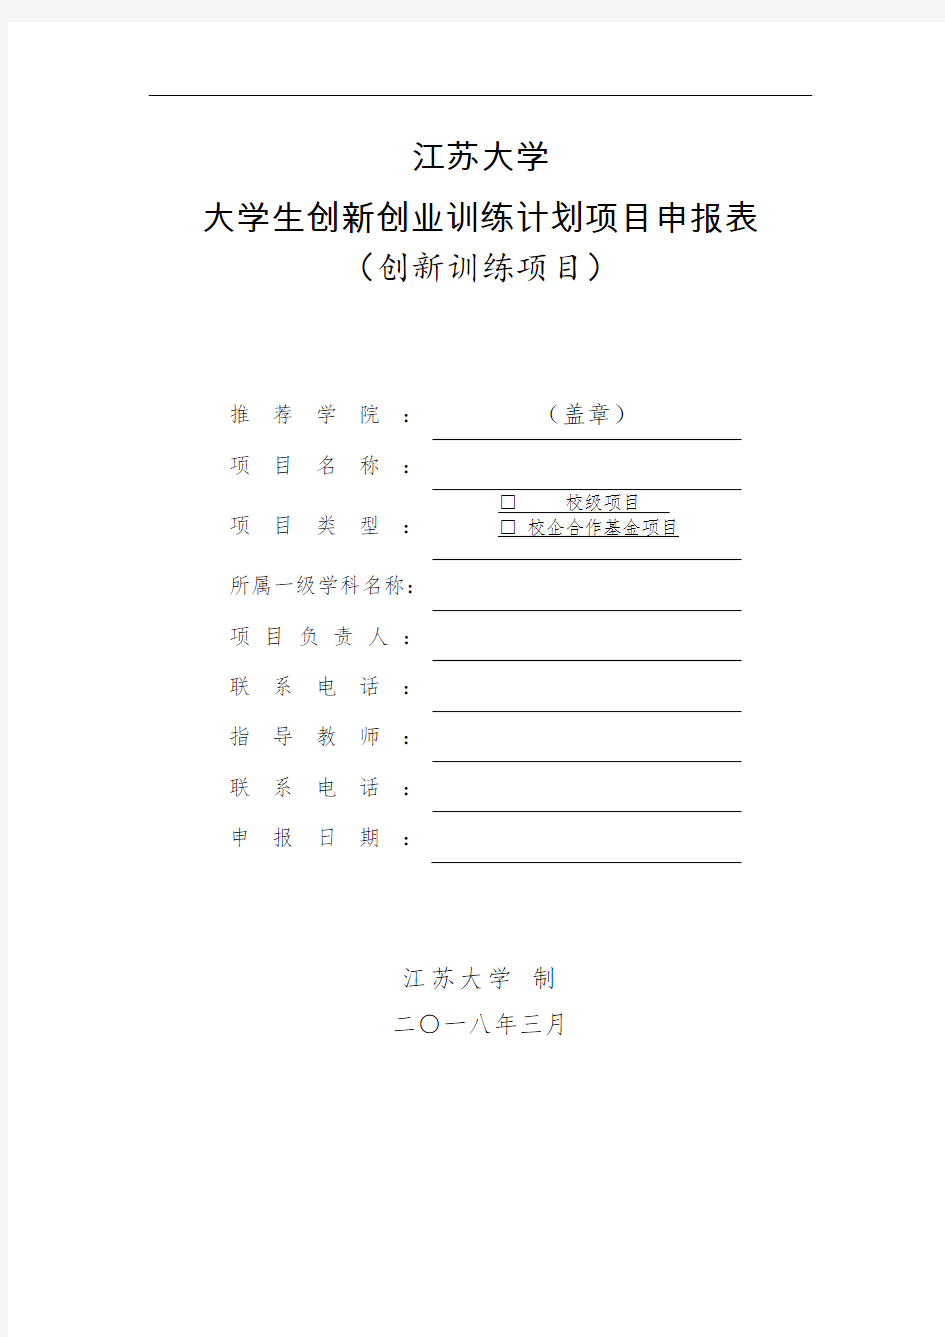 江苏大学大学生创新创业训练计划项目申报表